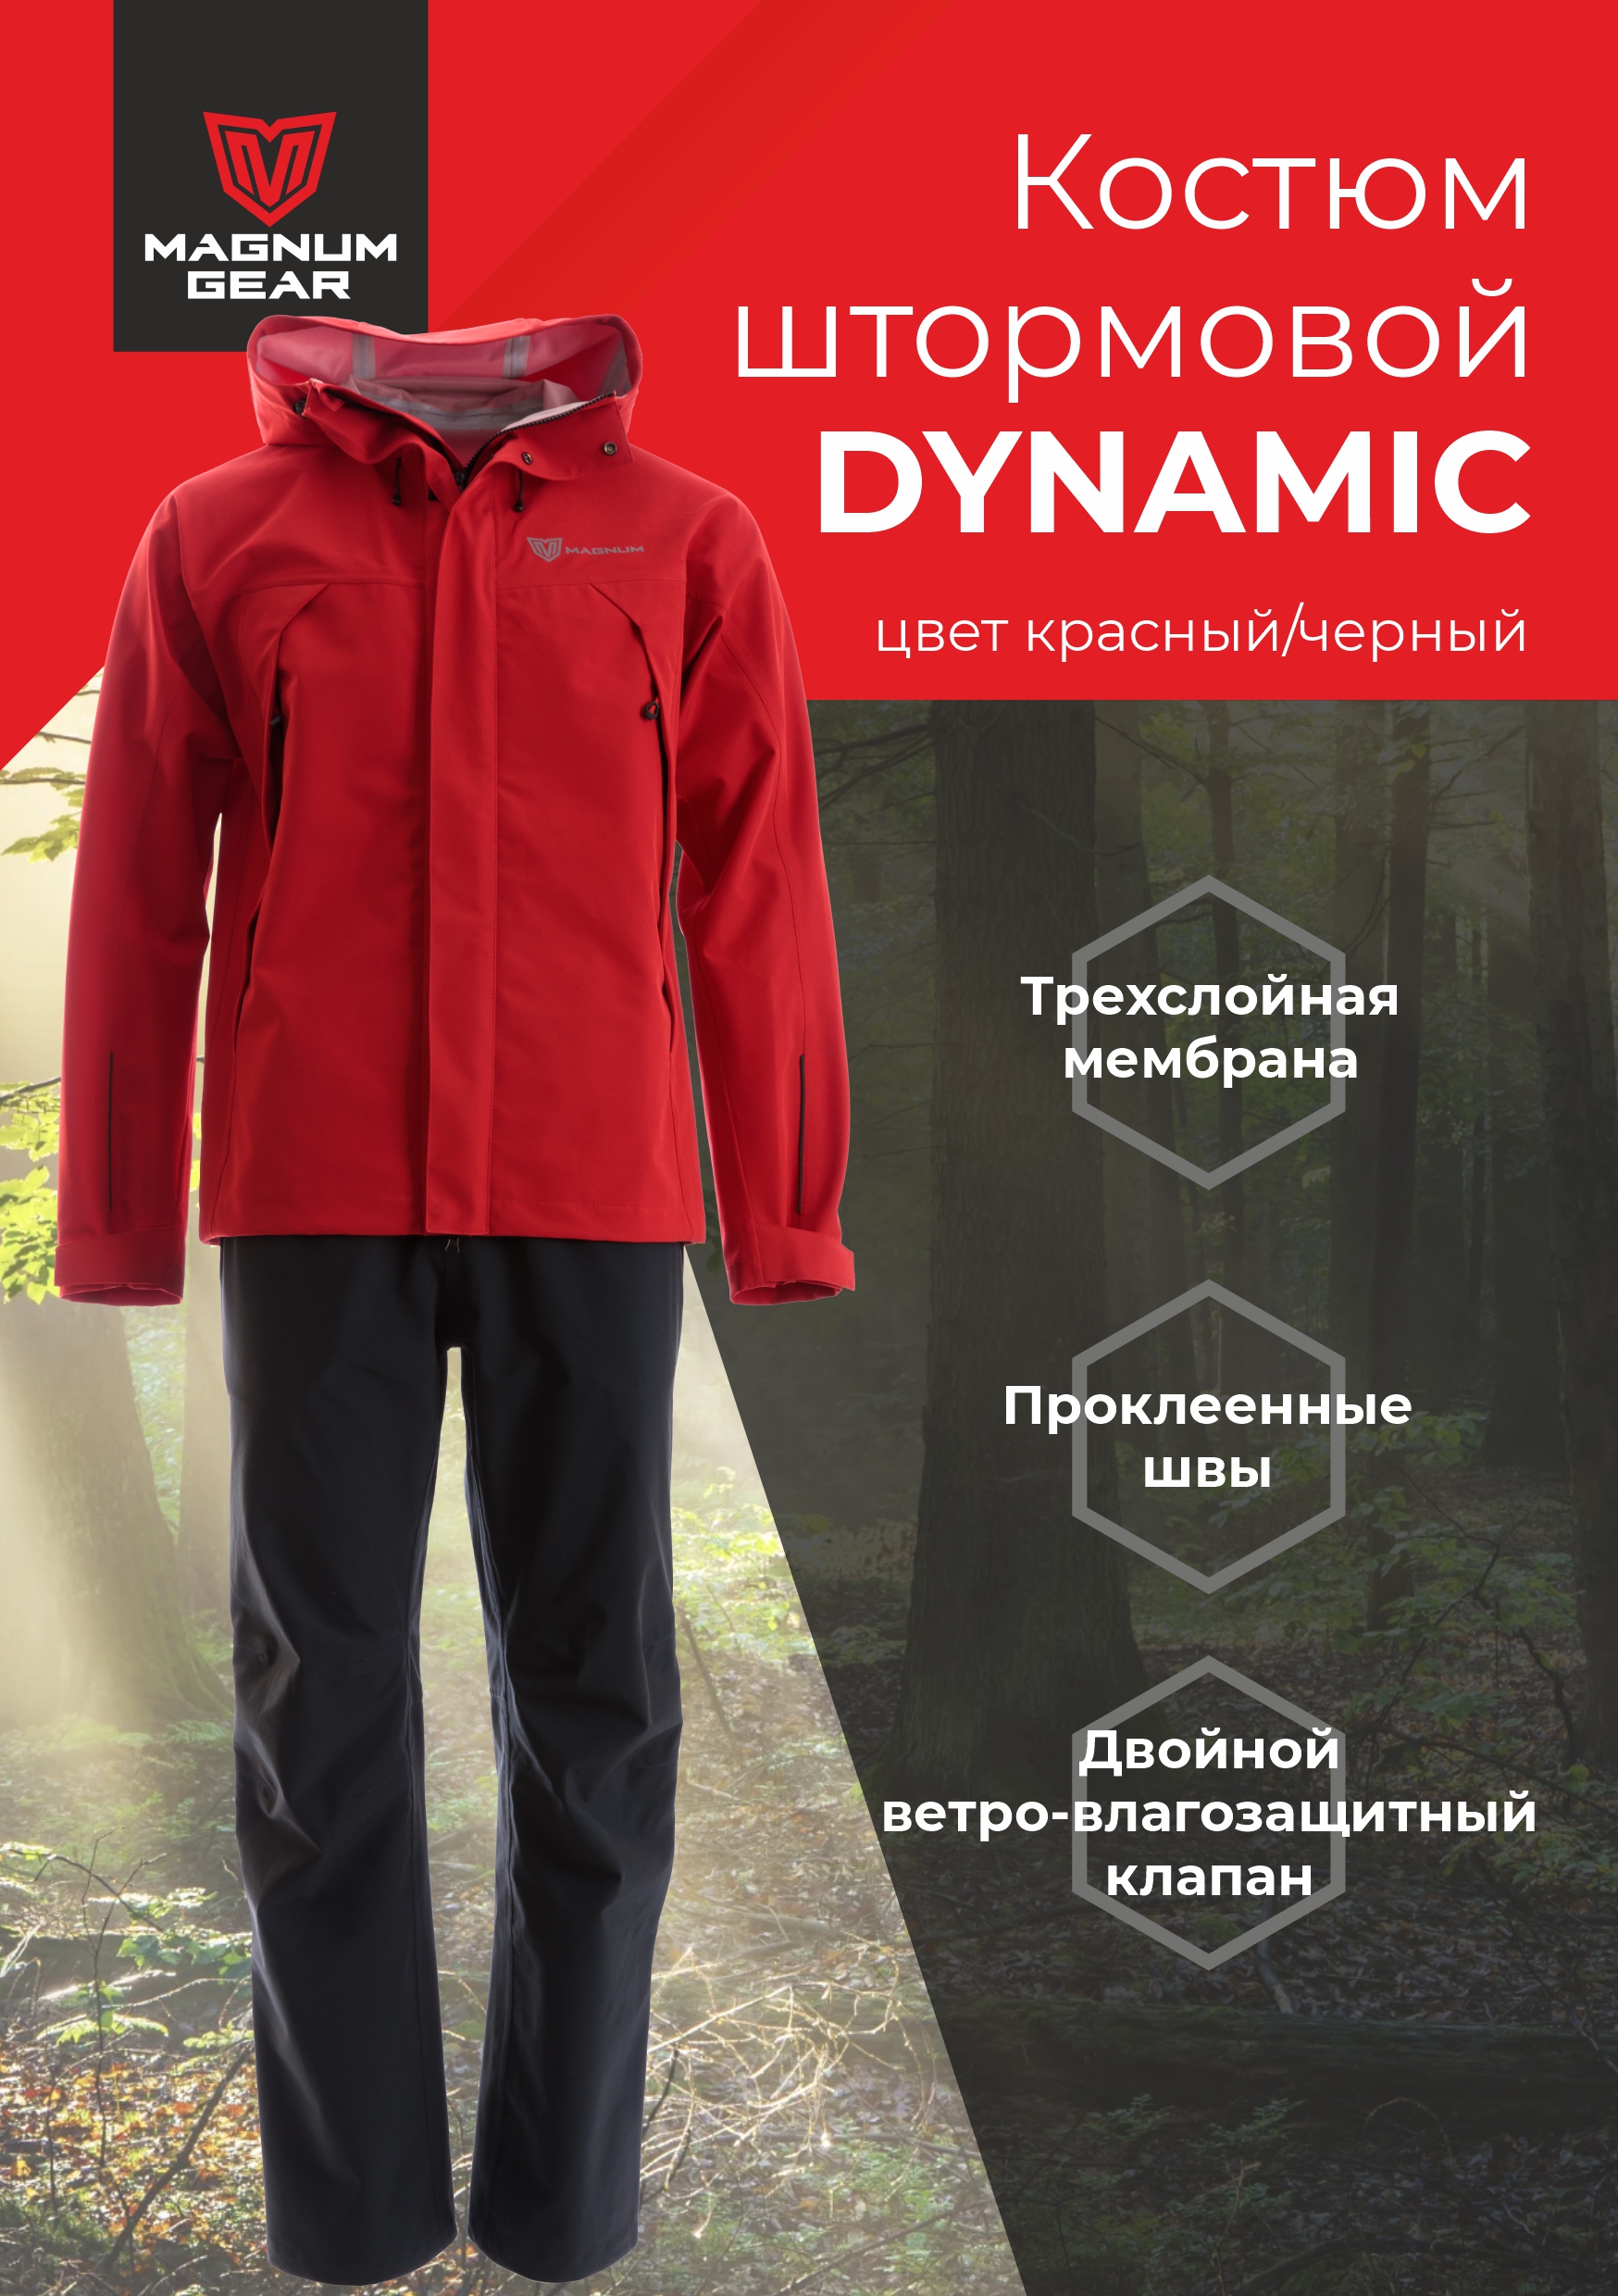 Костюм мужской Magnum Gear DYNAMIC, красный/черный, размер XL, рост 182-188